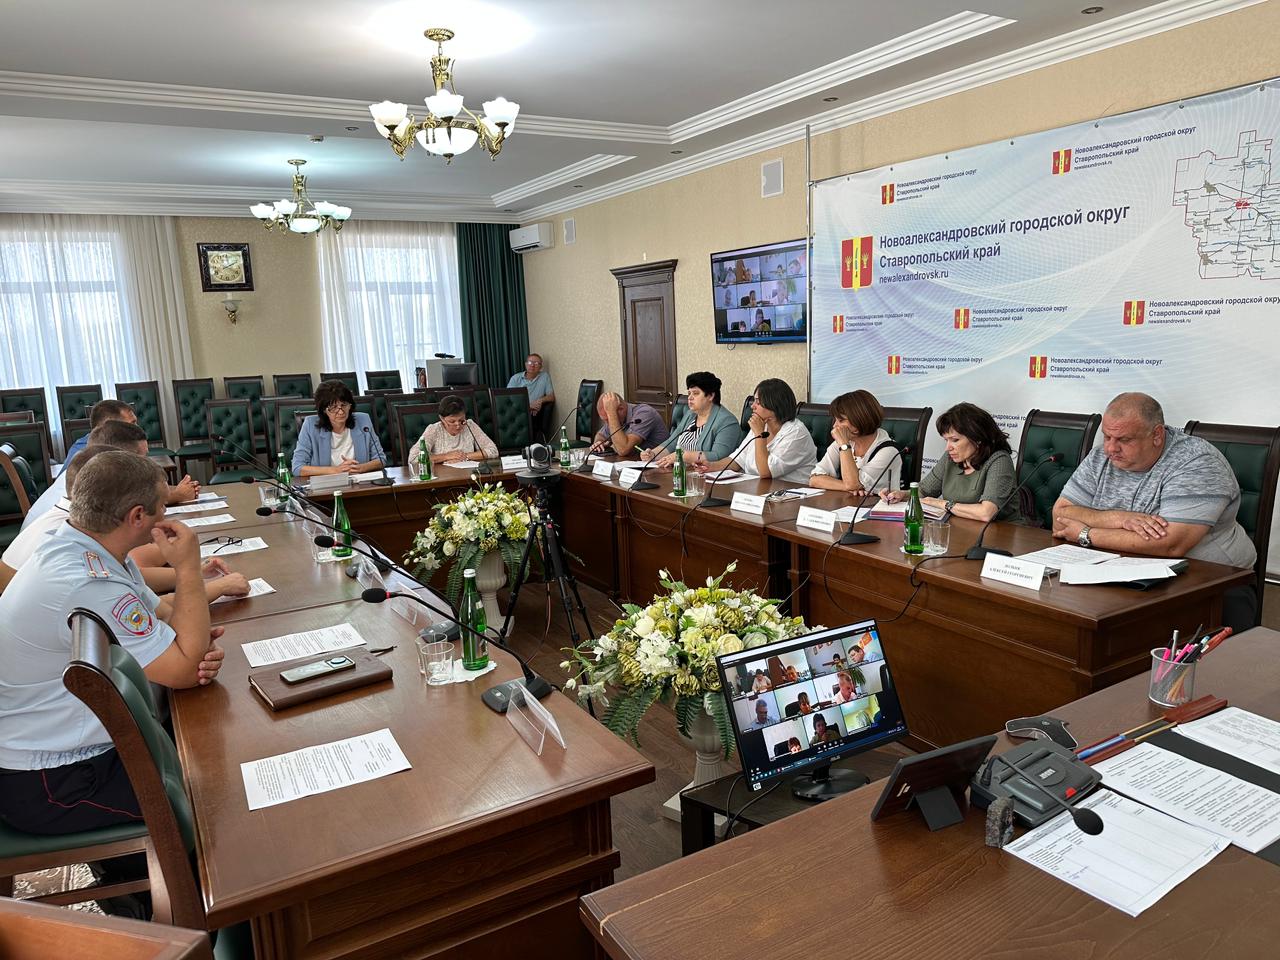 Заседание очередной антинаркотической комиссии Новоалександровского городского округа Ставропольского края.